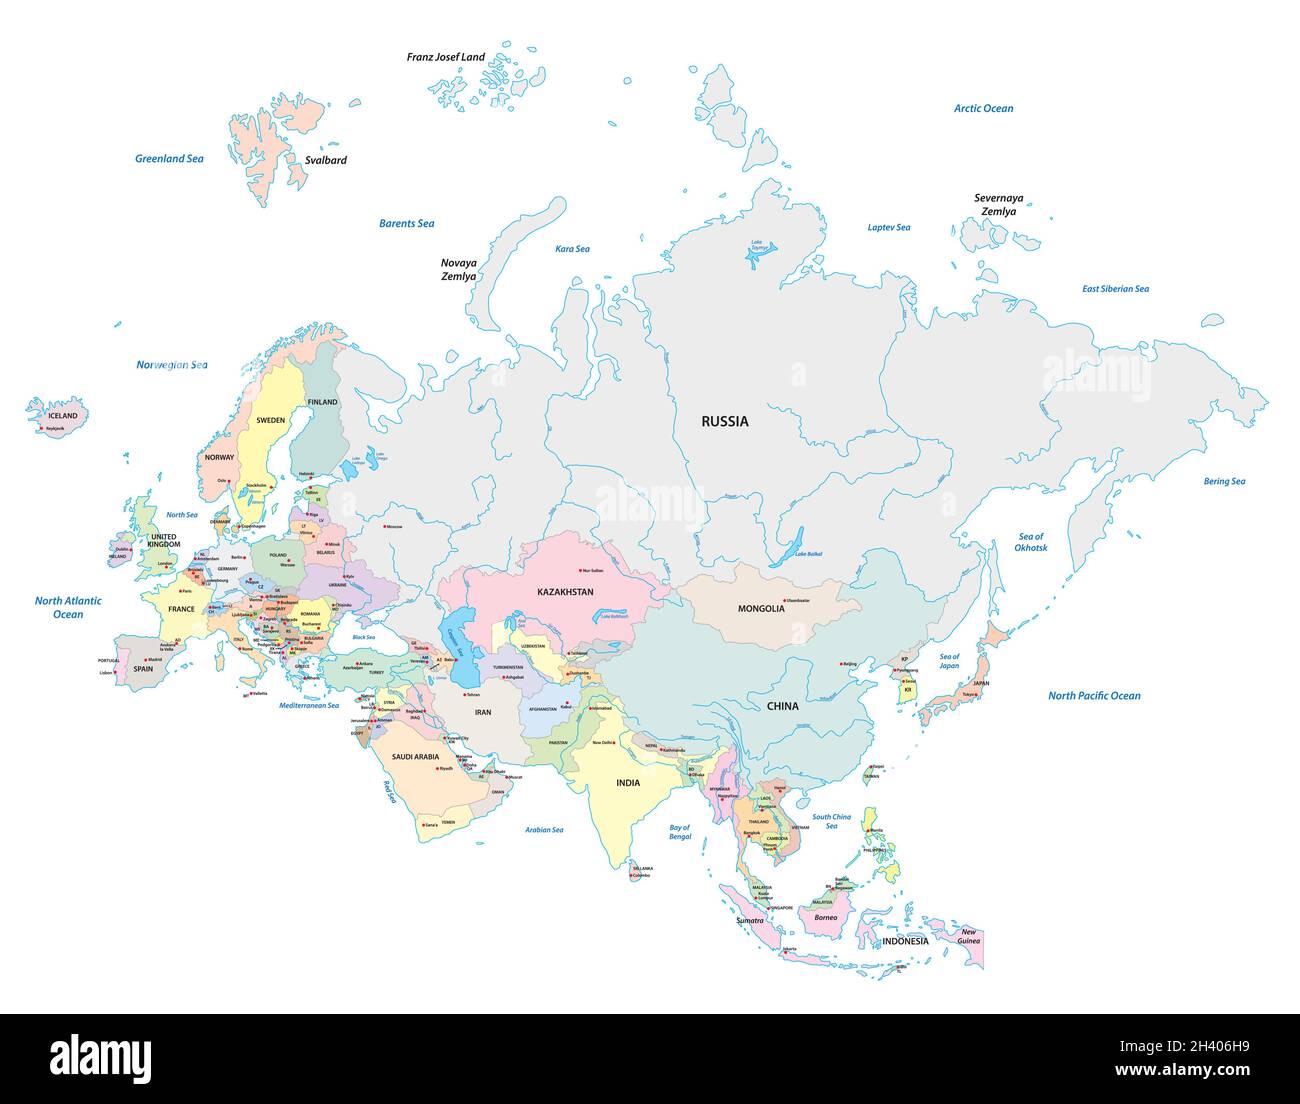 Mappa vettoriale dettagliata dei due continenti Europa e Asia, Eurasia Illustrazione Vettoriale